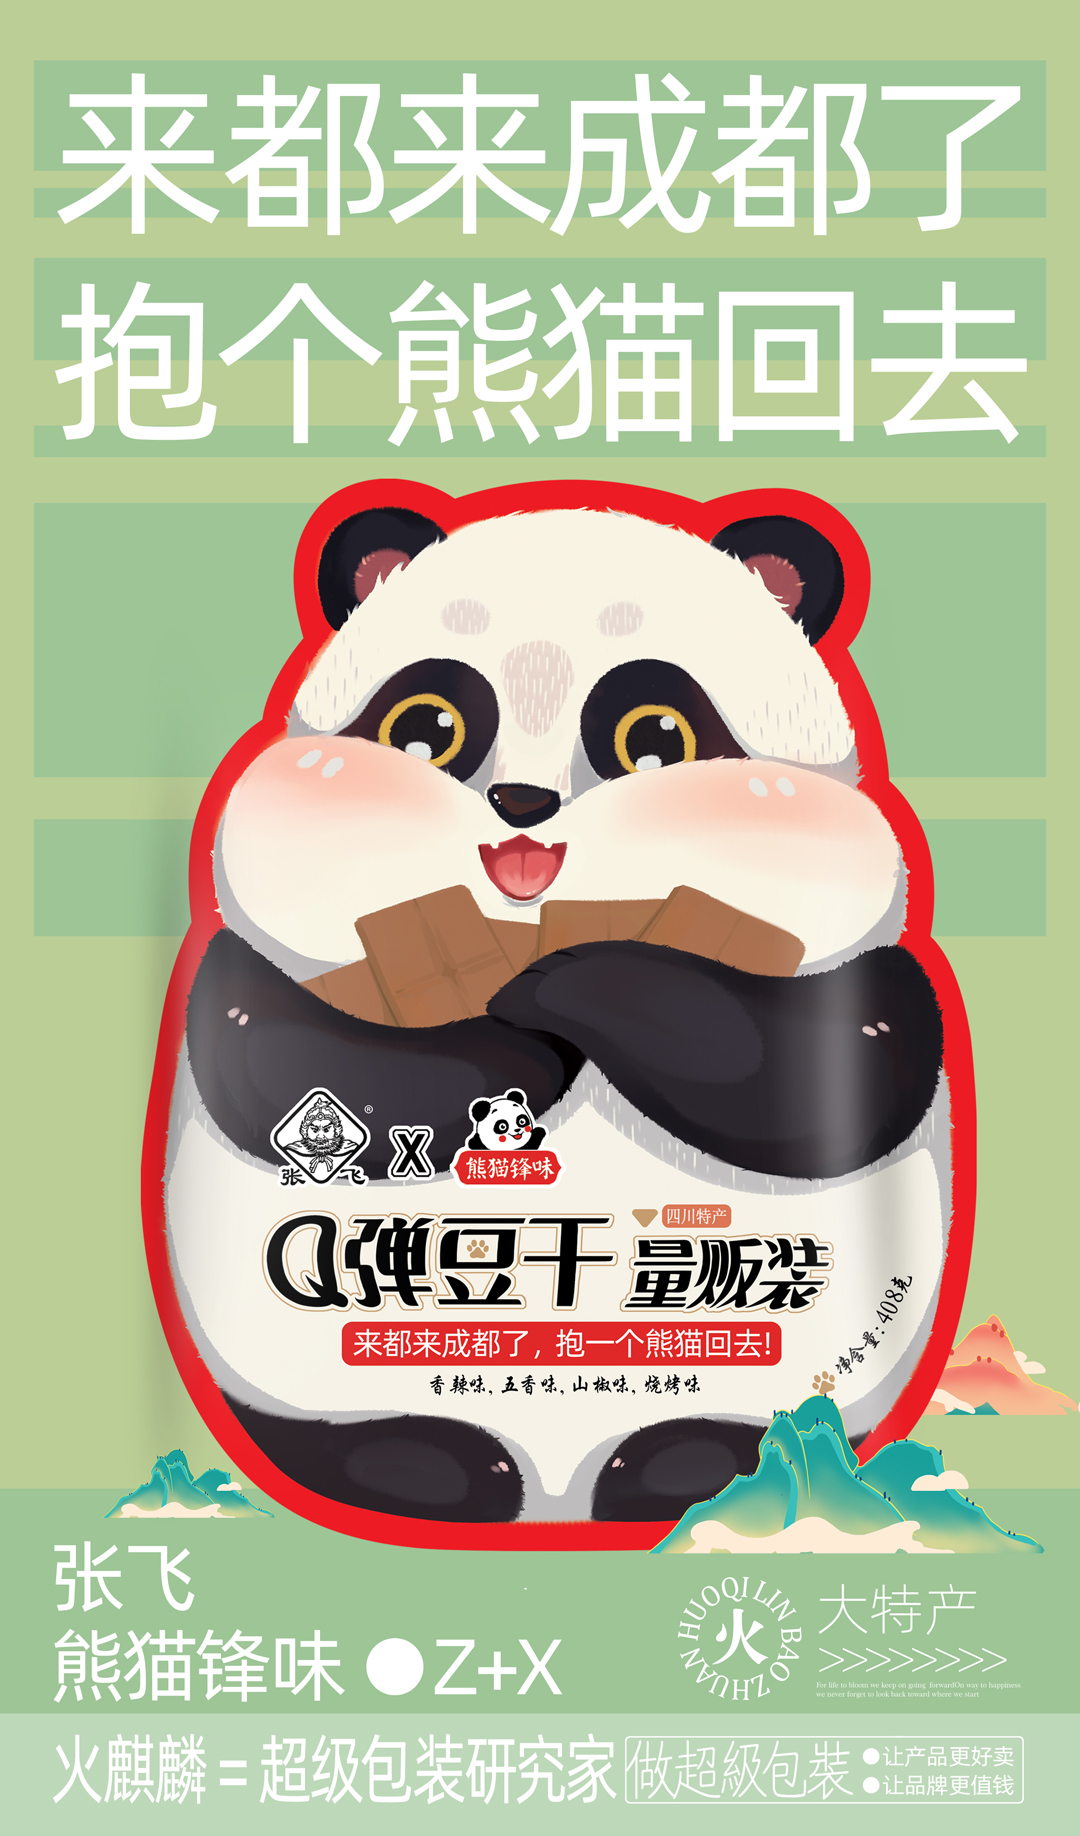 张飞联名熊猫风味丨Q弹豆干-四川专属特产包装